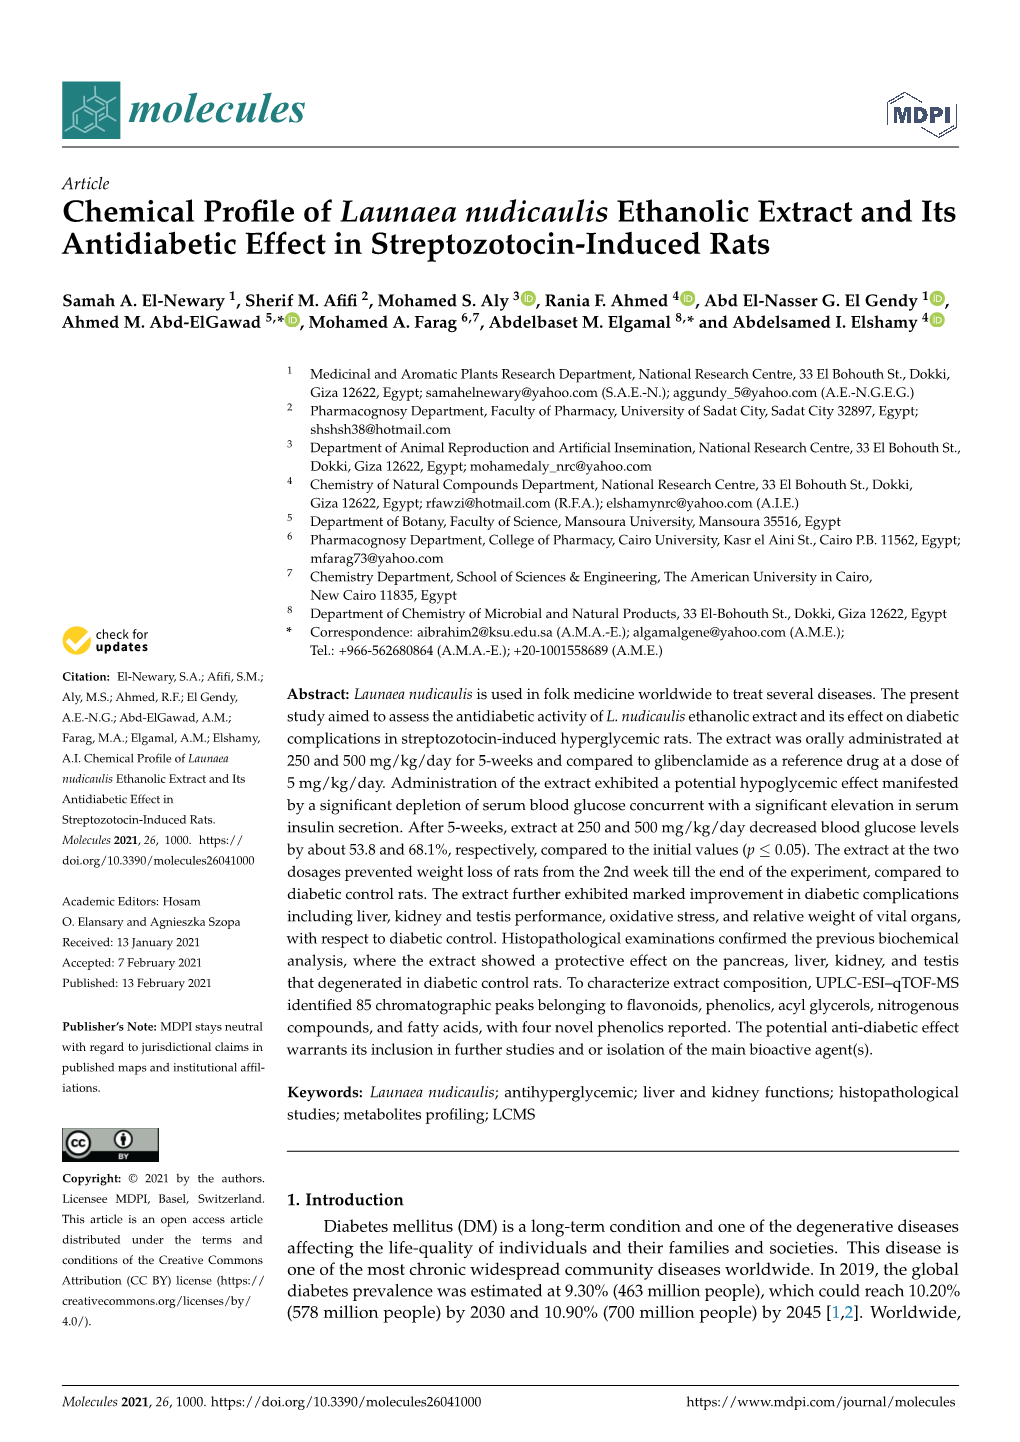 Chemical Profile of Launaea Nudicaulis Ethanolic Extract and Its